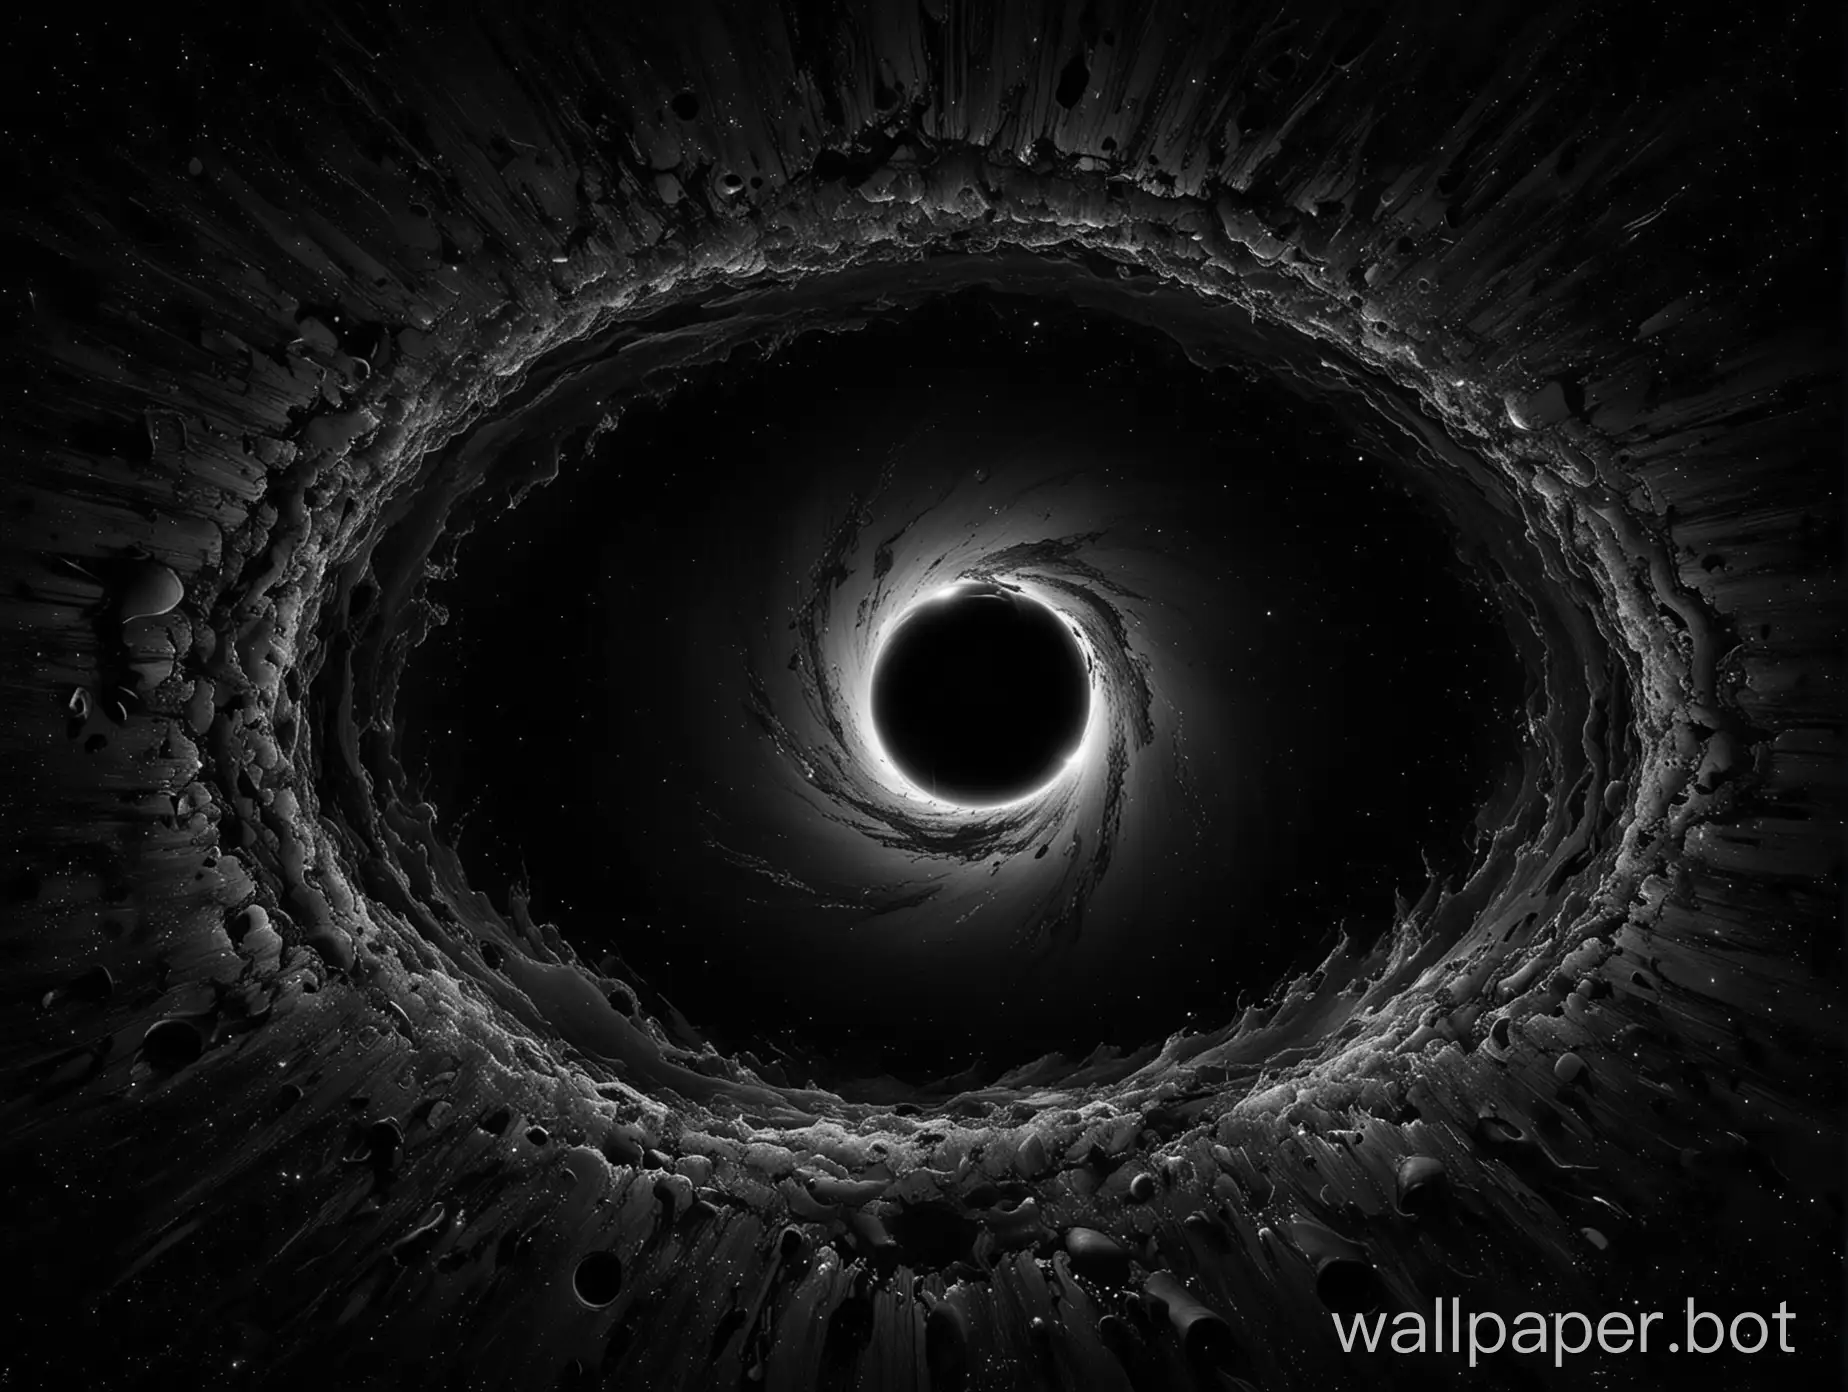 Breathtaking-4K-Wallpaper-of-a-Swirling-Black-Hole-in-Deep-Space